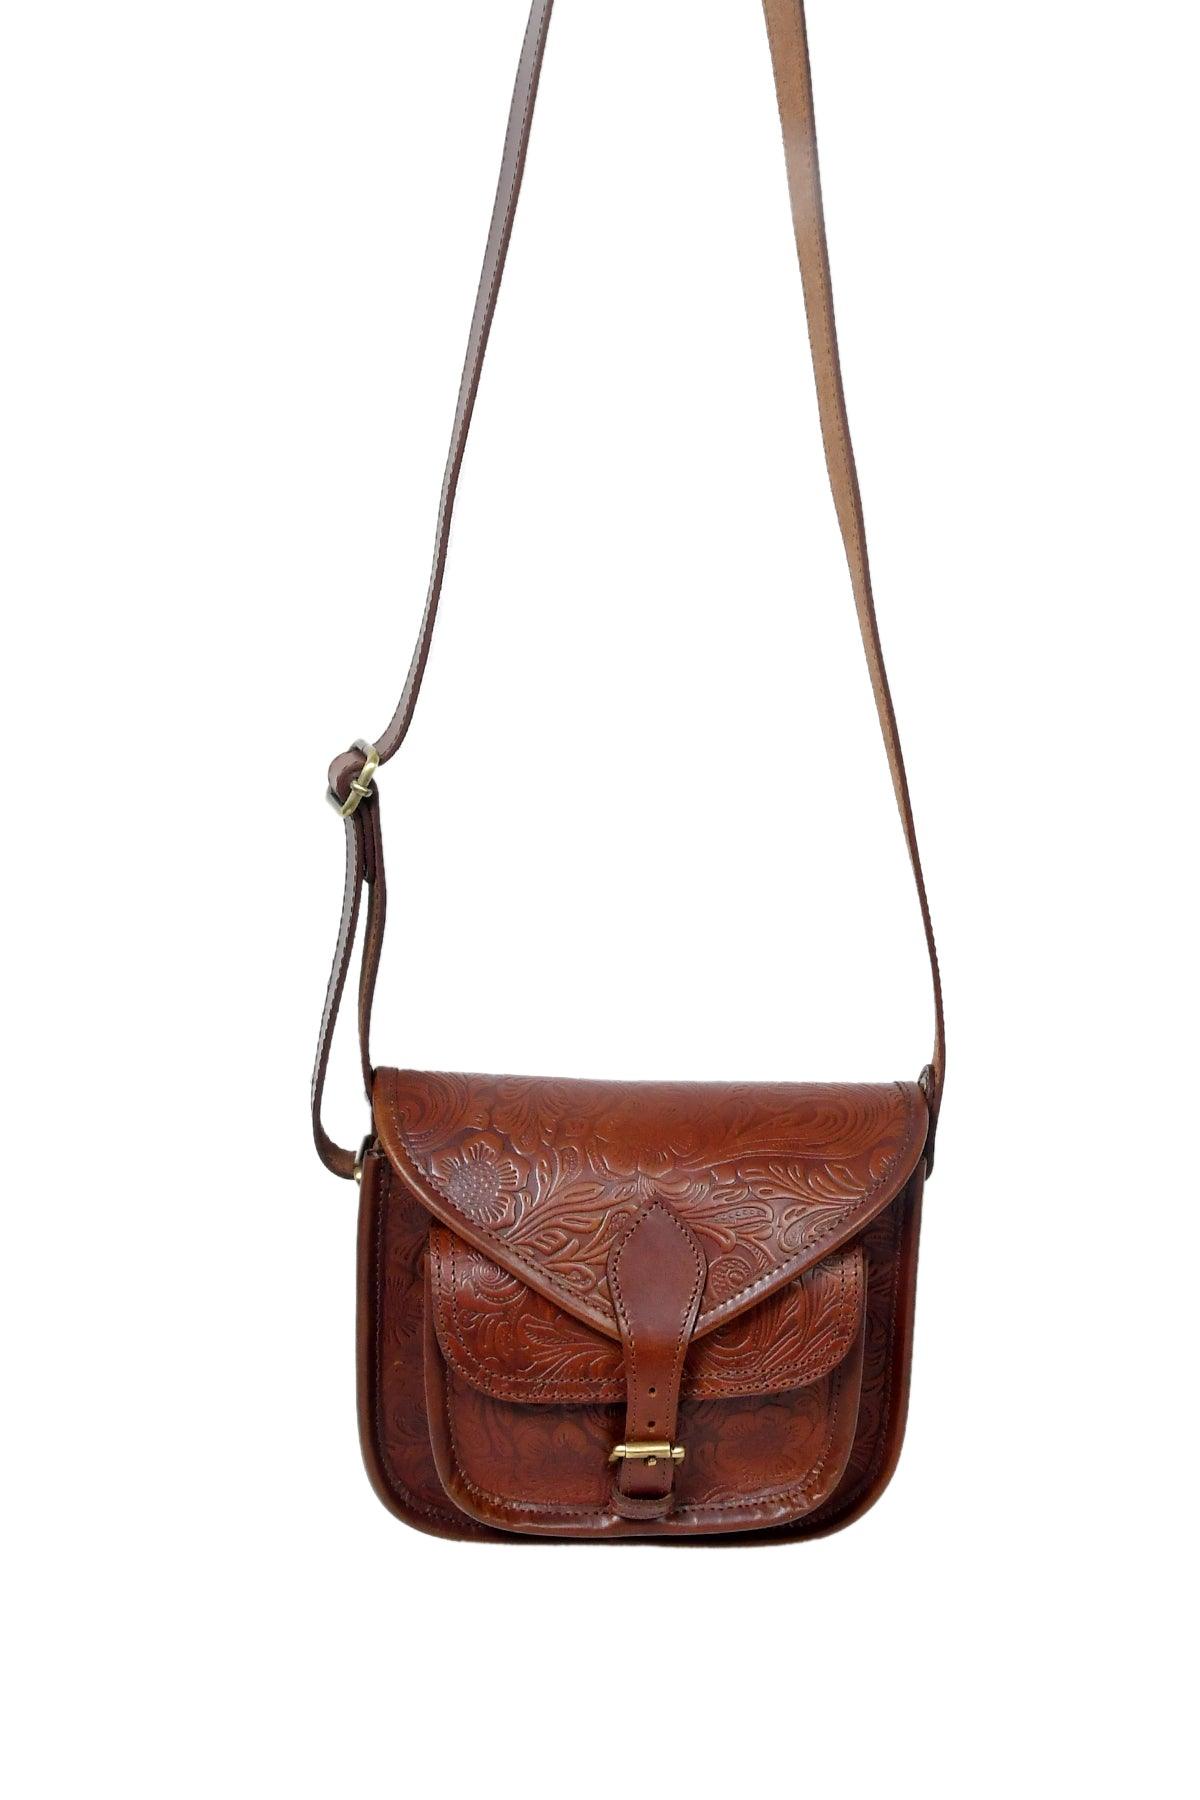 Celtic Leather Designer/Latest Shoulder Bag For Women/Girls - CELTICINDIA